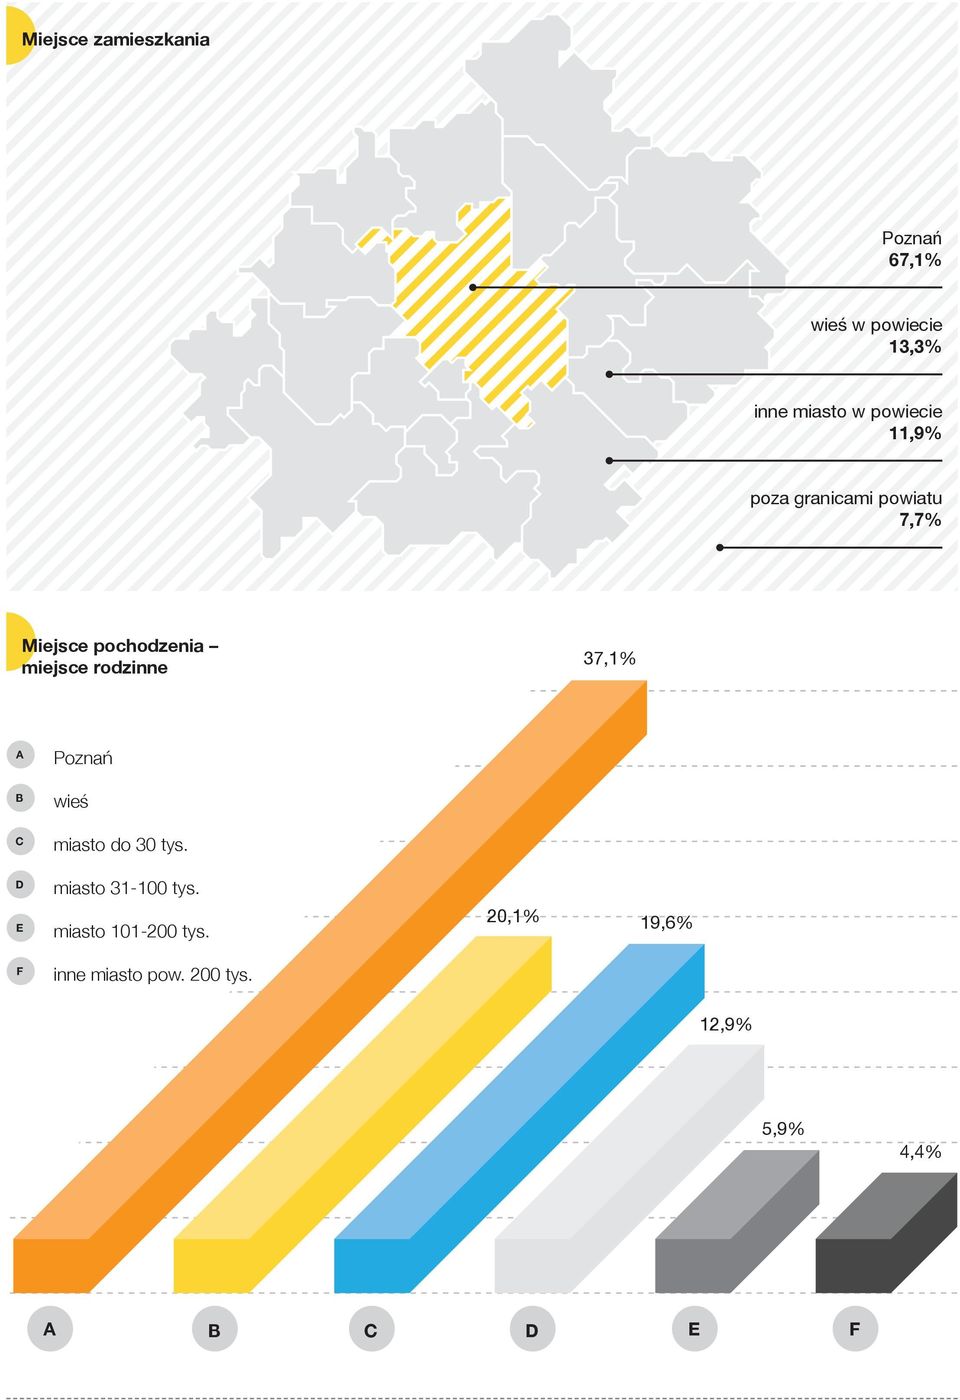 rodzinne 37,1% A B C D E F Poznań wieś miasto do 30 tys. miasto 31-100 tys.